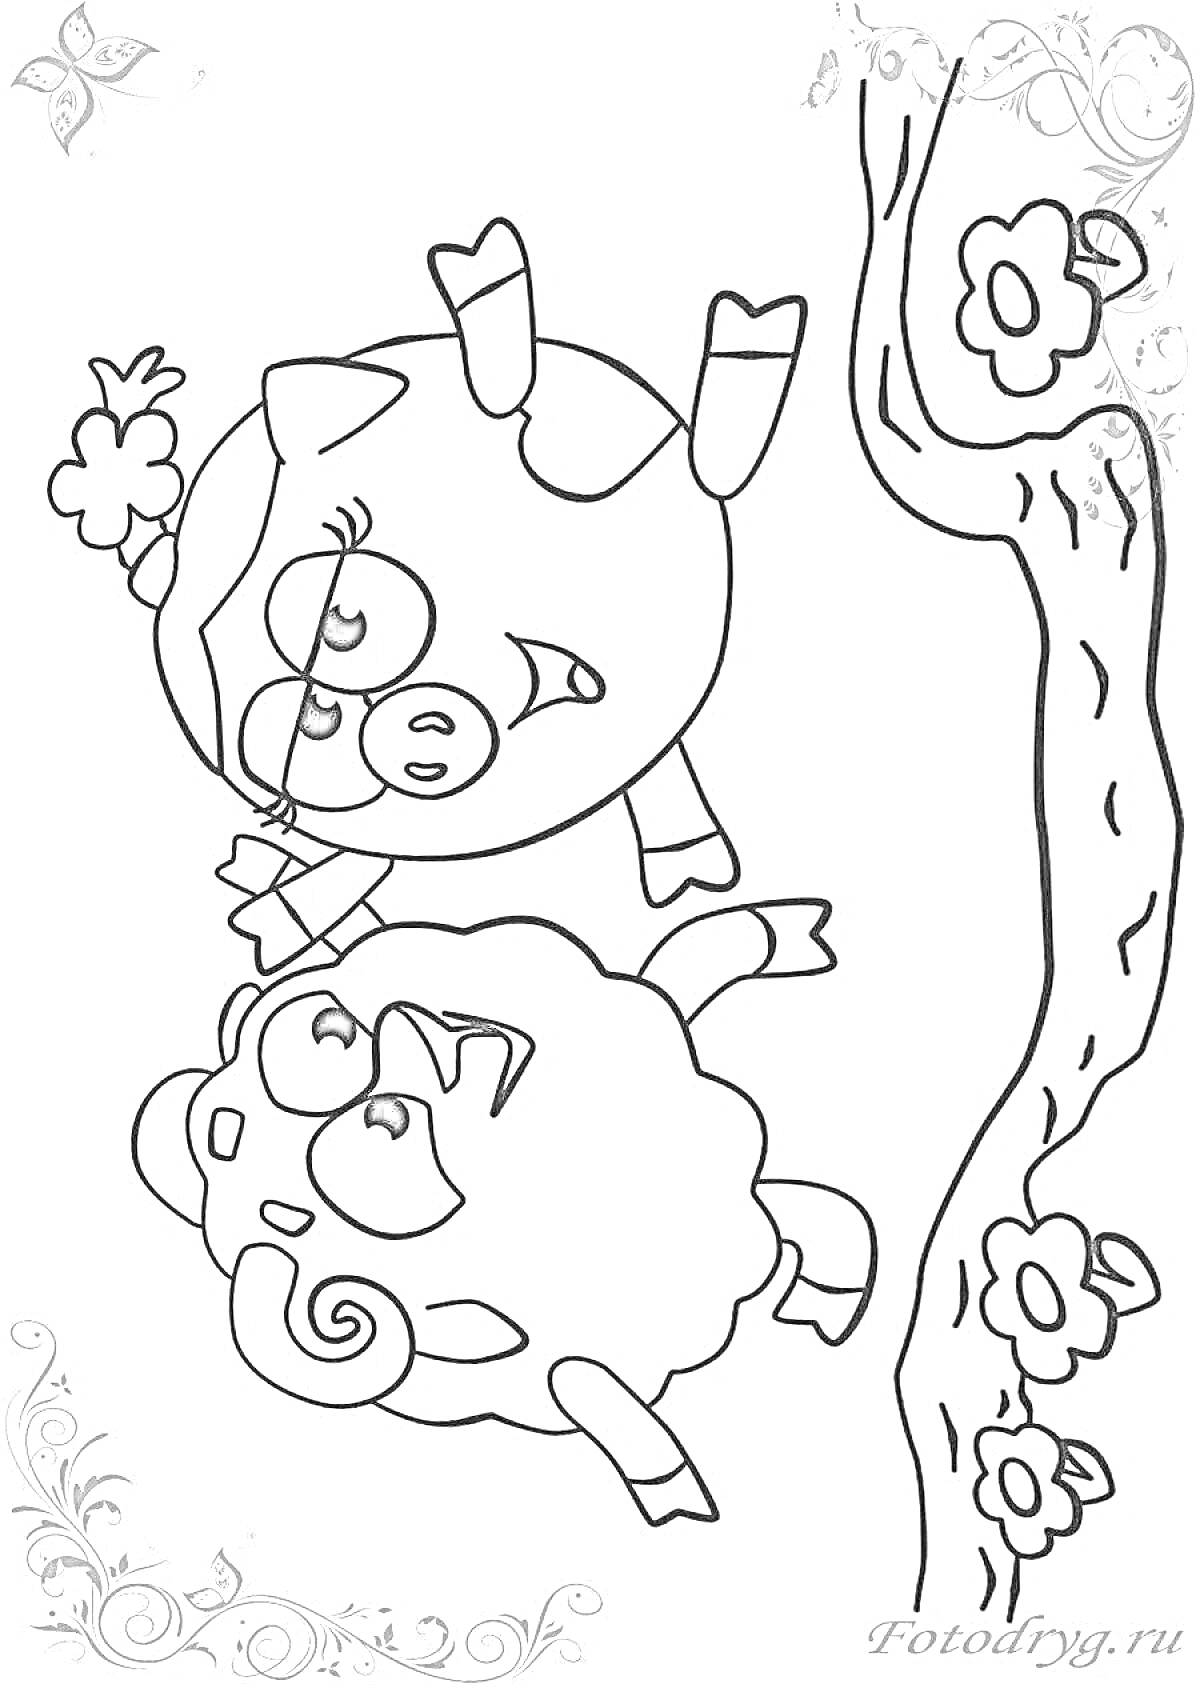 Раскраска Свинка и бараш на дереве с цветами